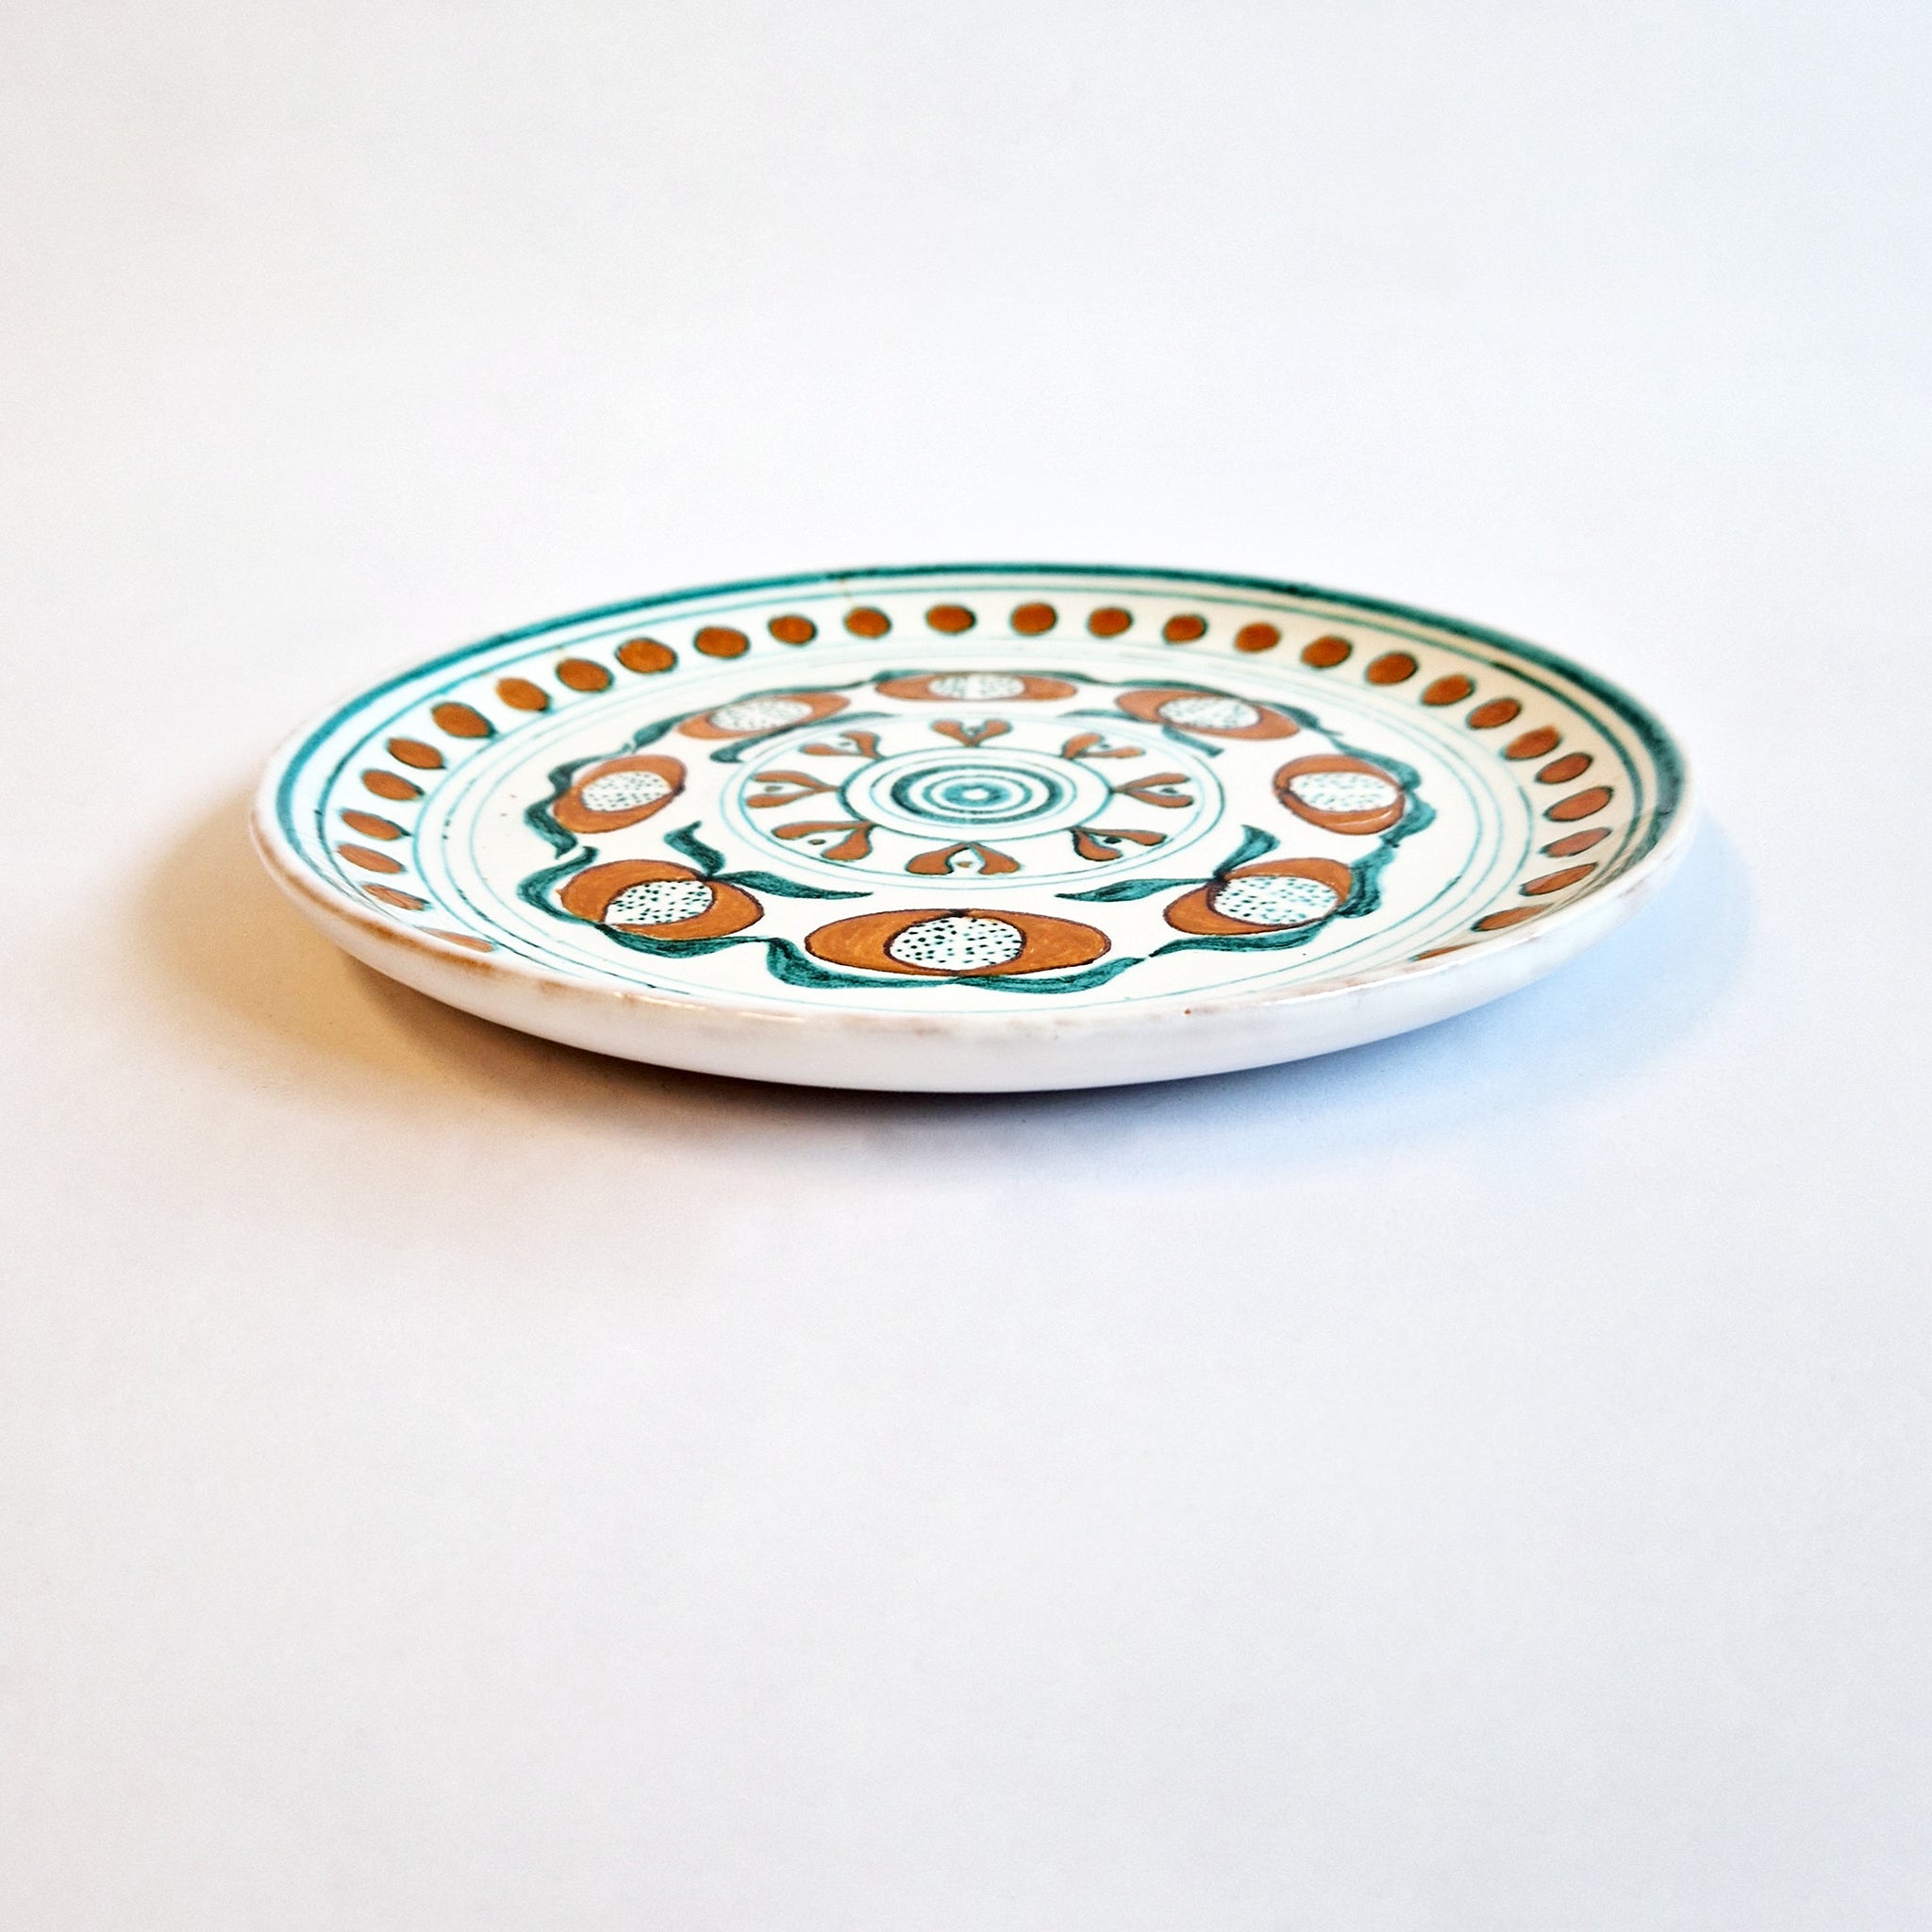 Vintage Italian patterned ceramic plate